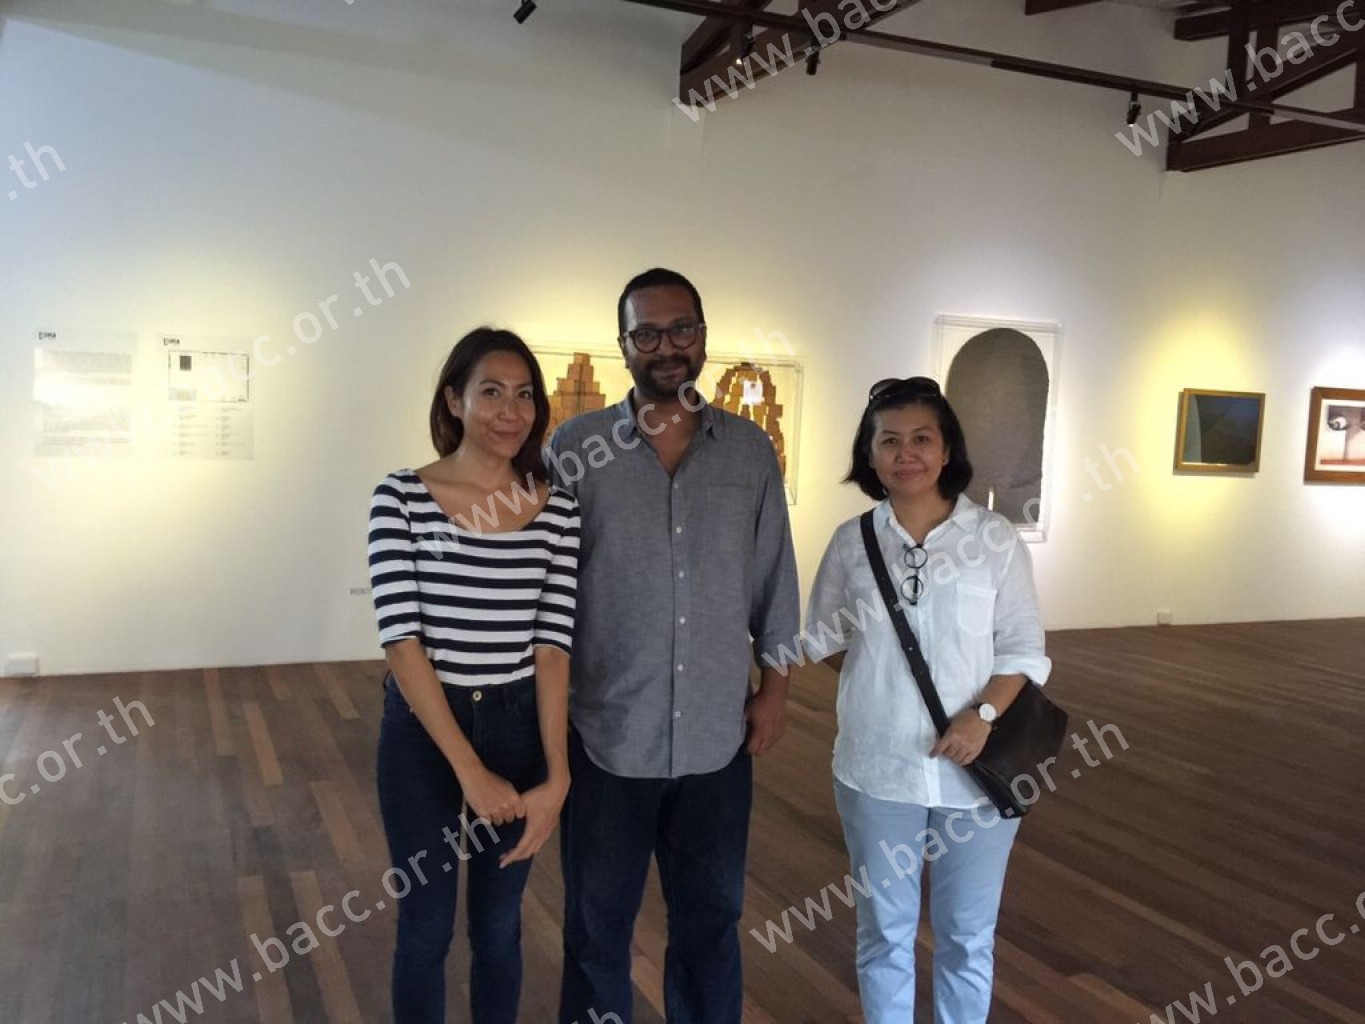 ศิลปินชาวอินเดีย อานูป แมทธิว โทมัส คว้ารางวัล ‘Han Nefkens Foundation-BACC Award for Contemporary Art’ ครั้งที่ 2 